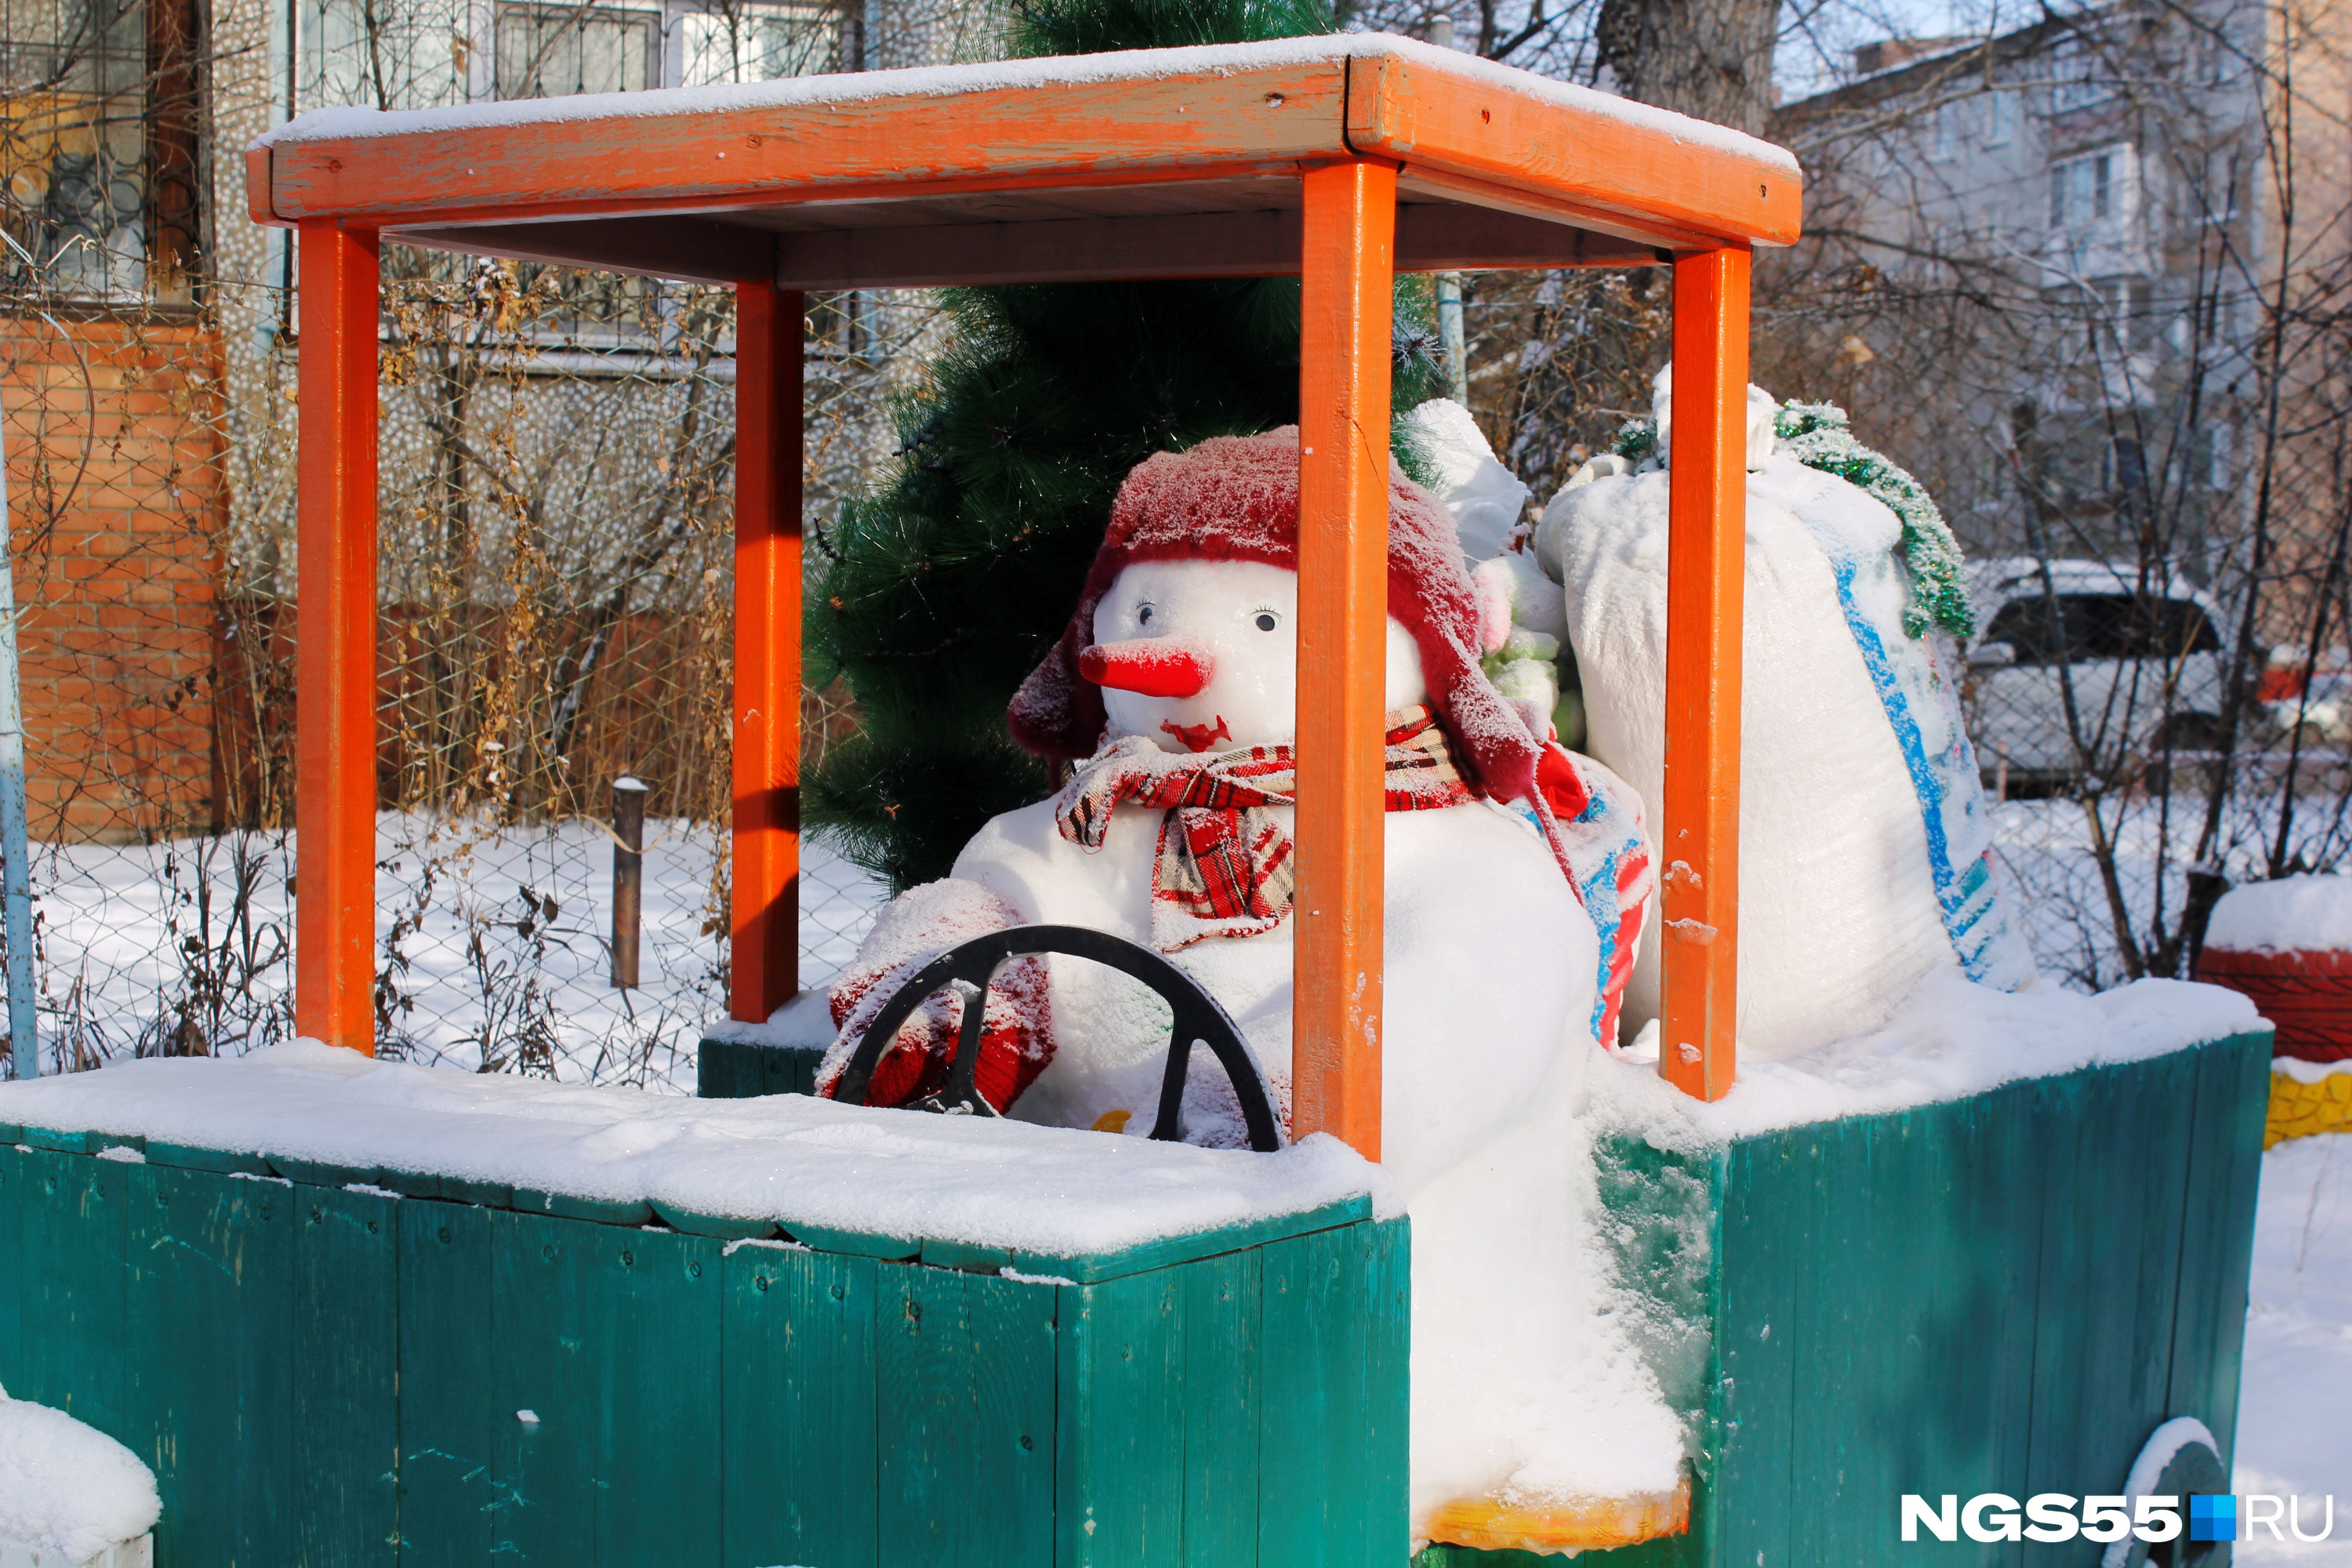 Снеговичок усердно везет мешки с подарками в своем грузовике, но, похоже, он сильно опоздал — Дед Мороз не обрадуется